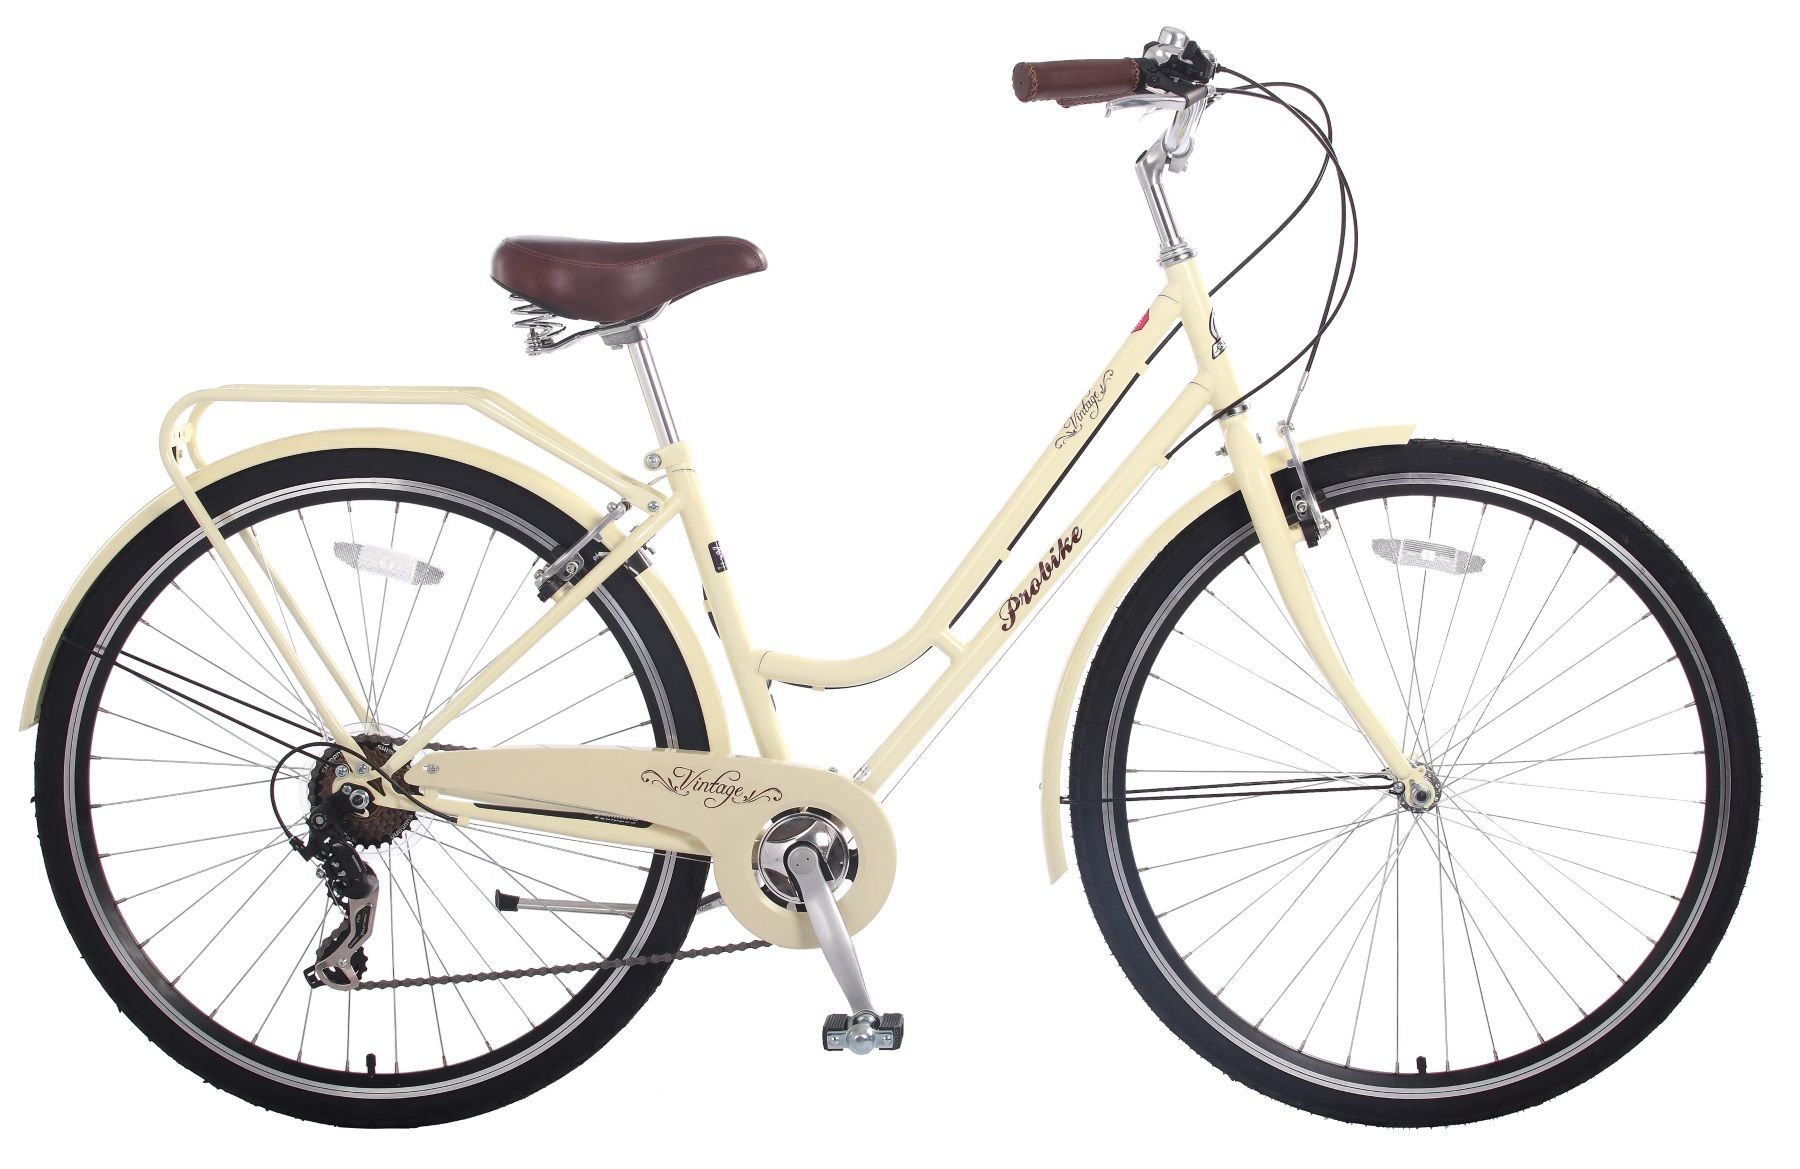 Велосипед кремовый цвет. Велосипед кремовый Винтаж. Carella Vulcan велосипед. Велосипед кремовый цвет детский. Пробайк велосипеды